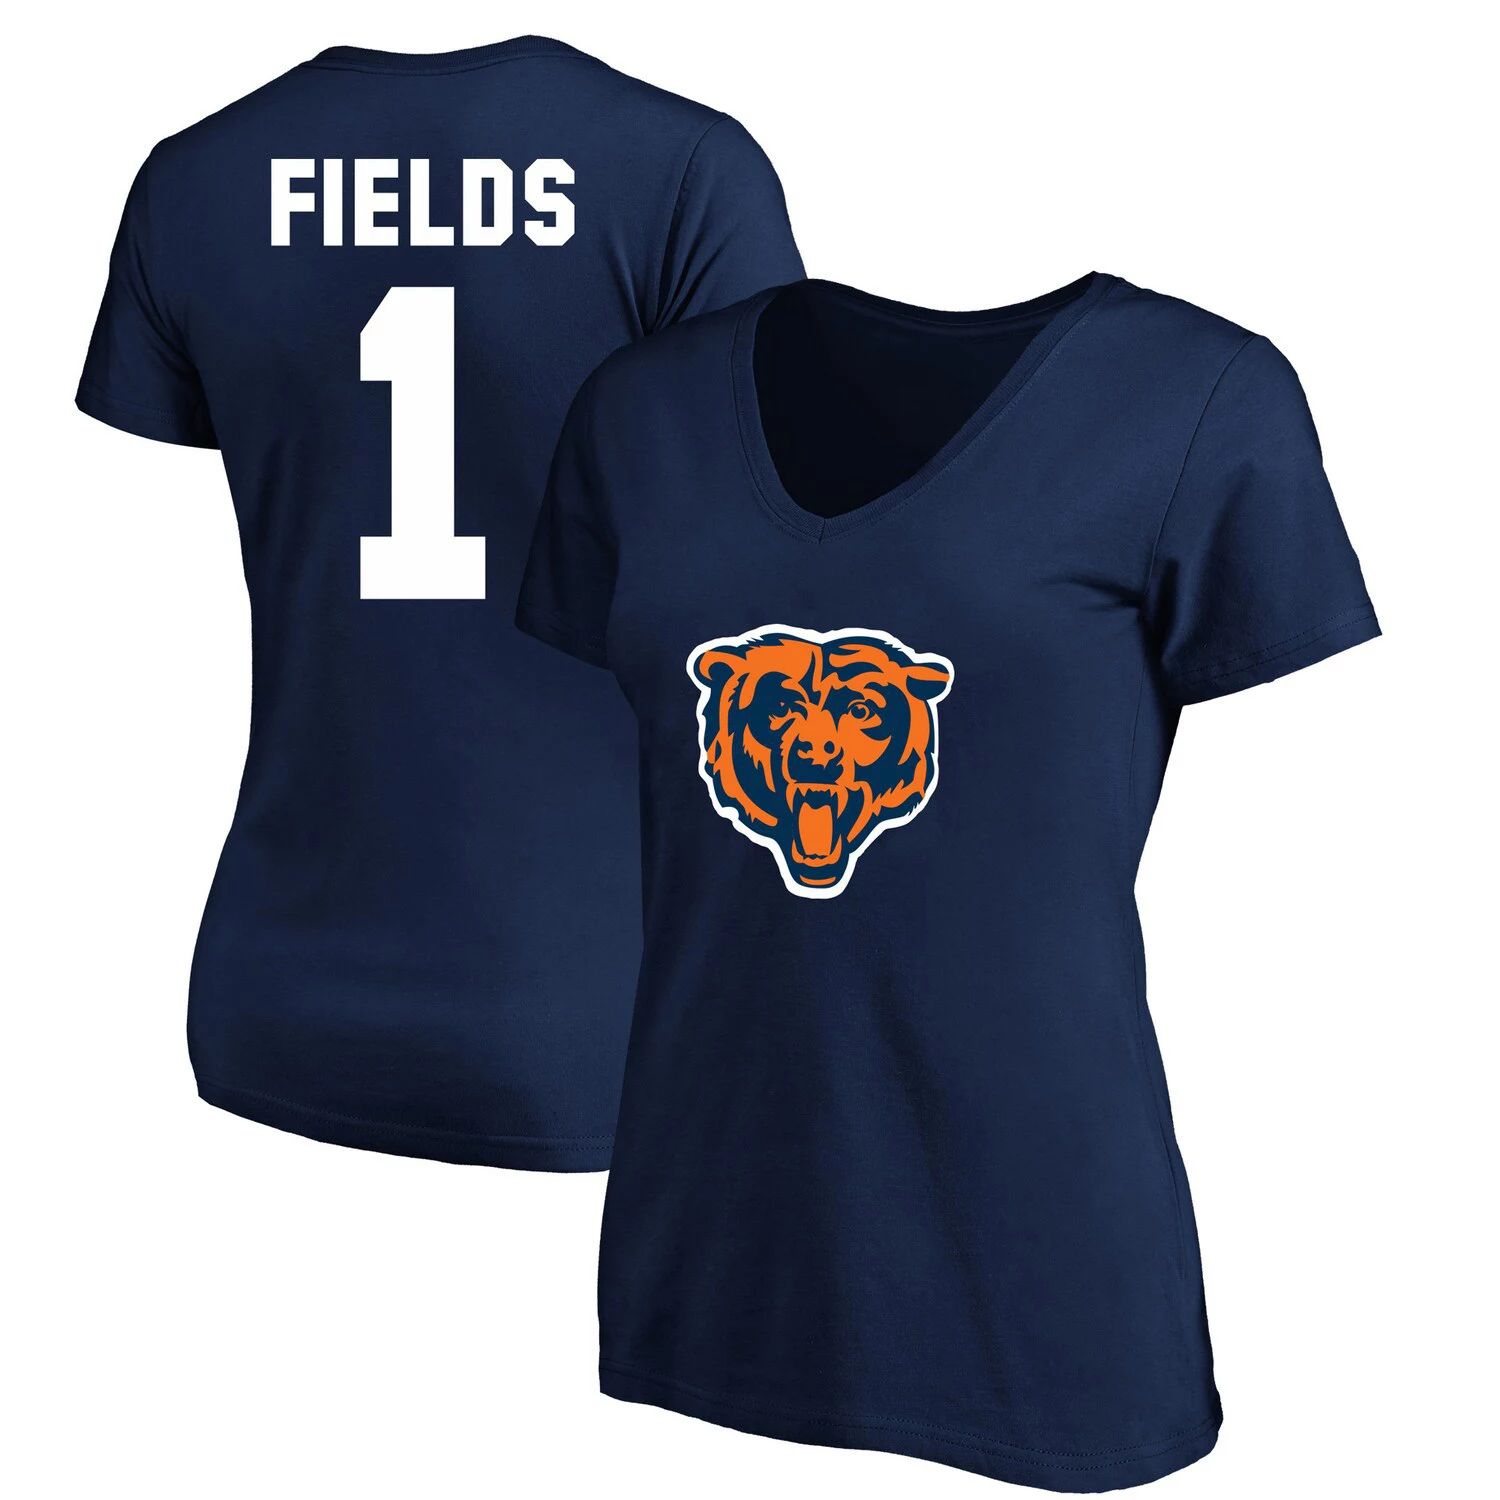 Женская футболка Fanatics с логотипом Justin Fields, темно-синяя футболка Chicago Bears размера плюс с именем и номером игрока с v-образным вырезом Fanatics